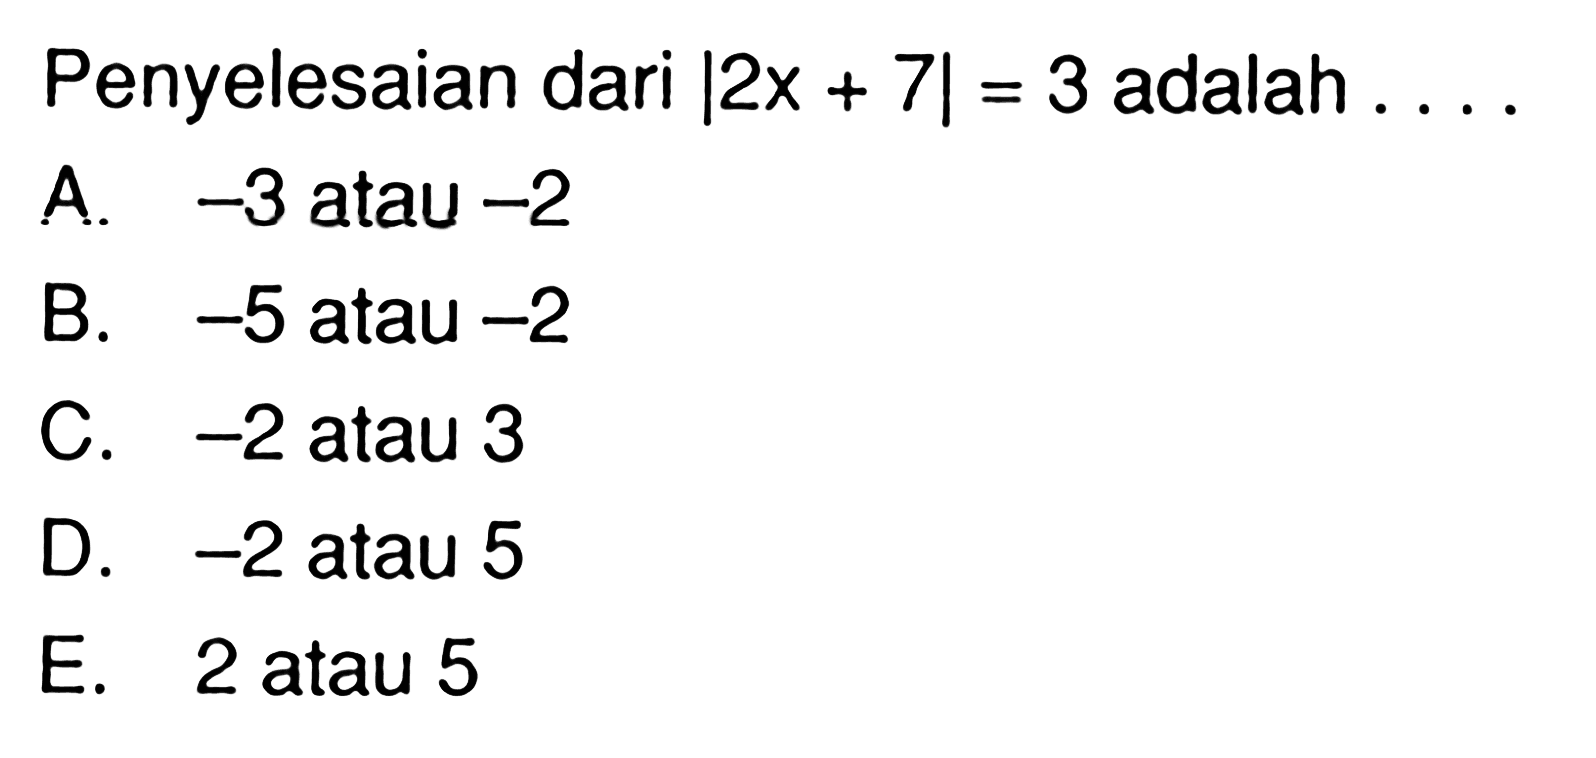 Penyelesaian dari |2x + 7| = 3 adalah ...